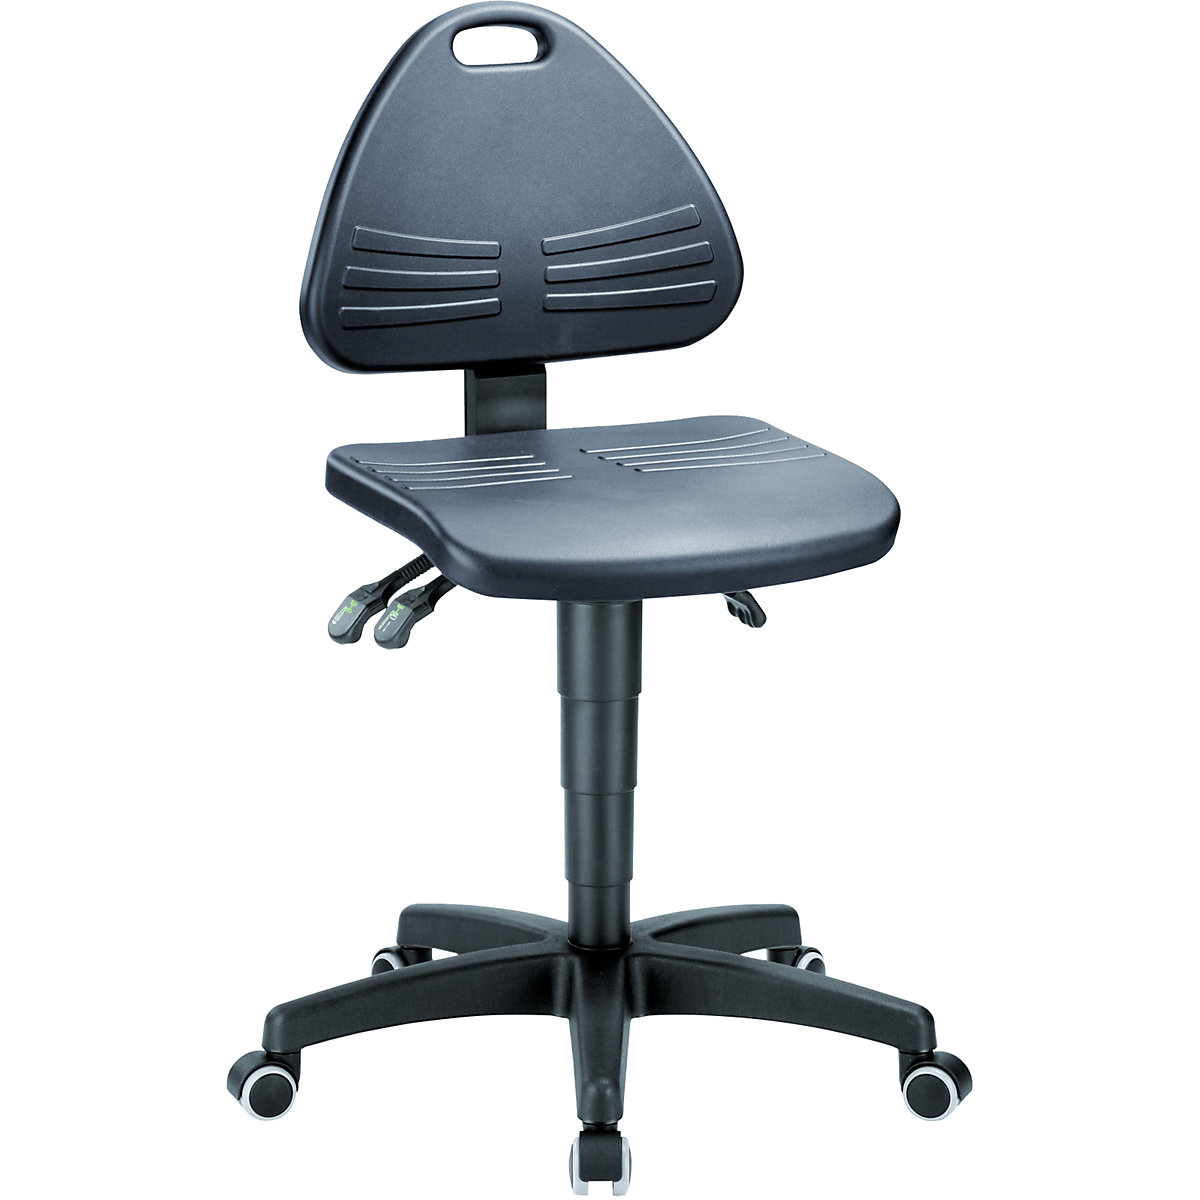 Okretni radni stolac – bimos, obložen PU pjenom, s kotačima, područje namještanja visine 430 – 600 mm-4